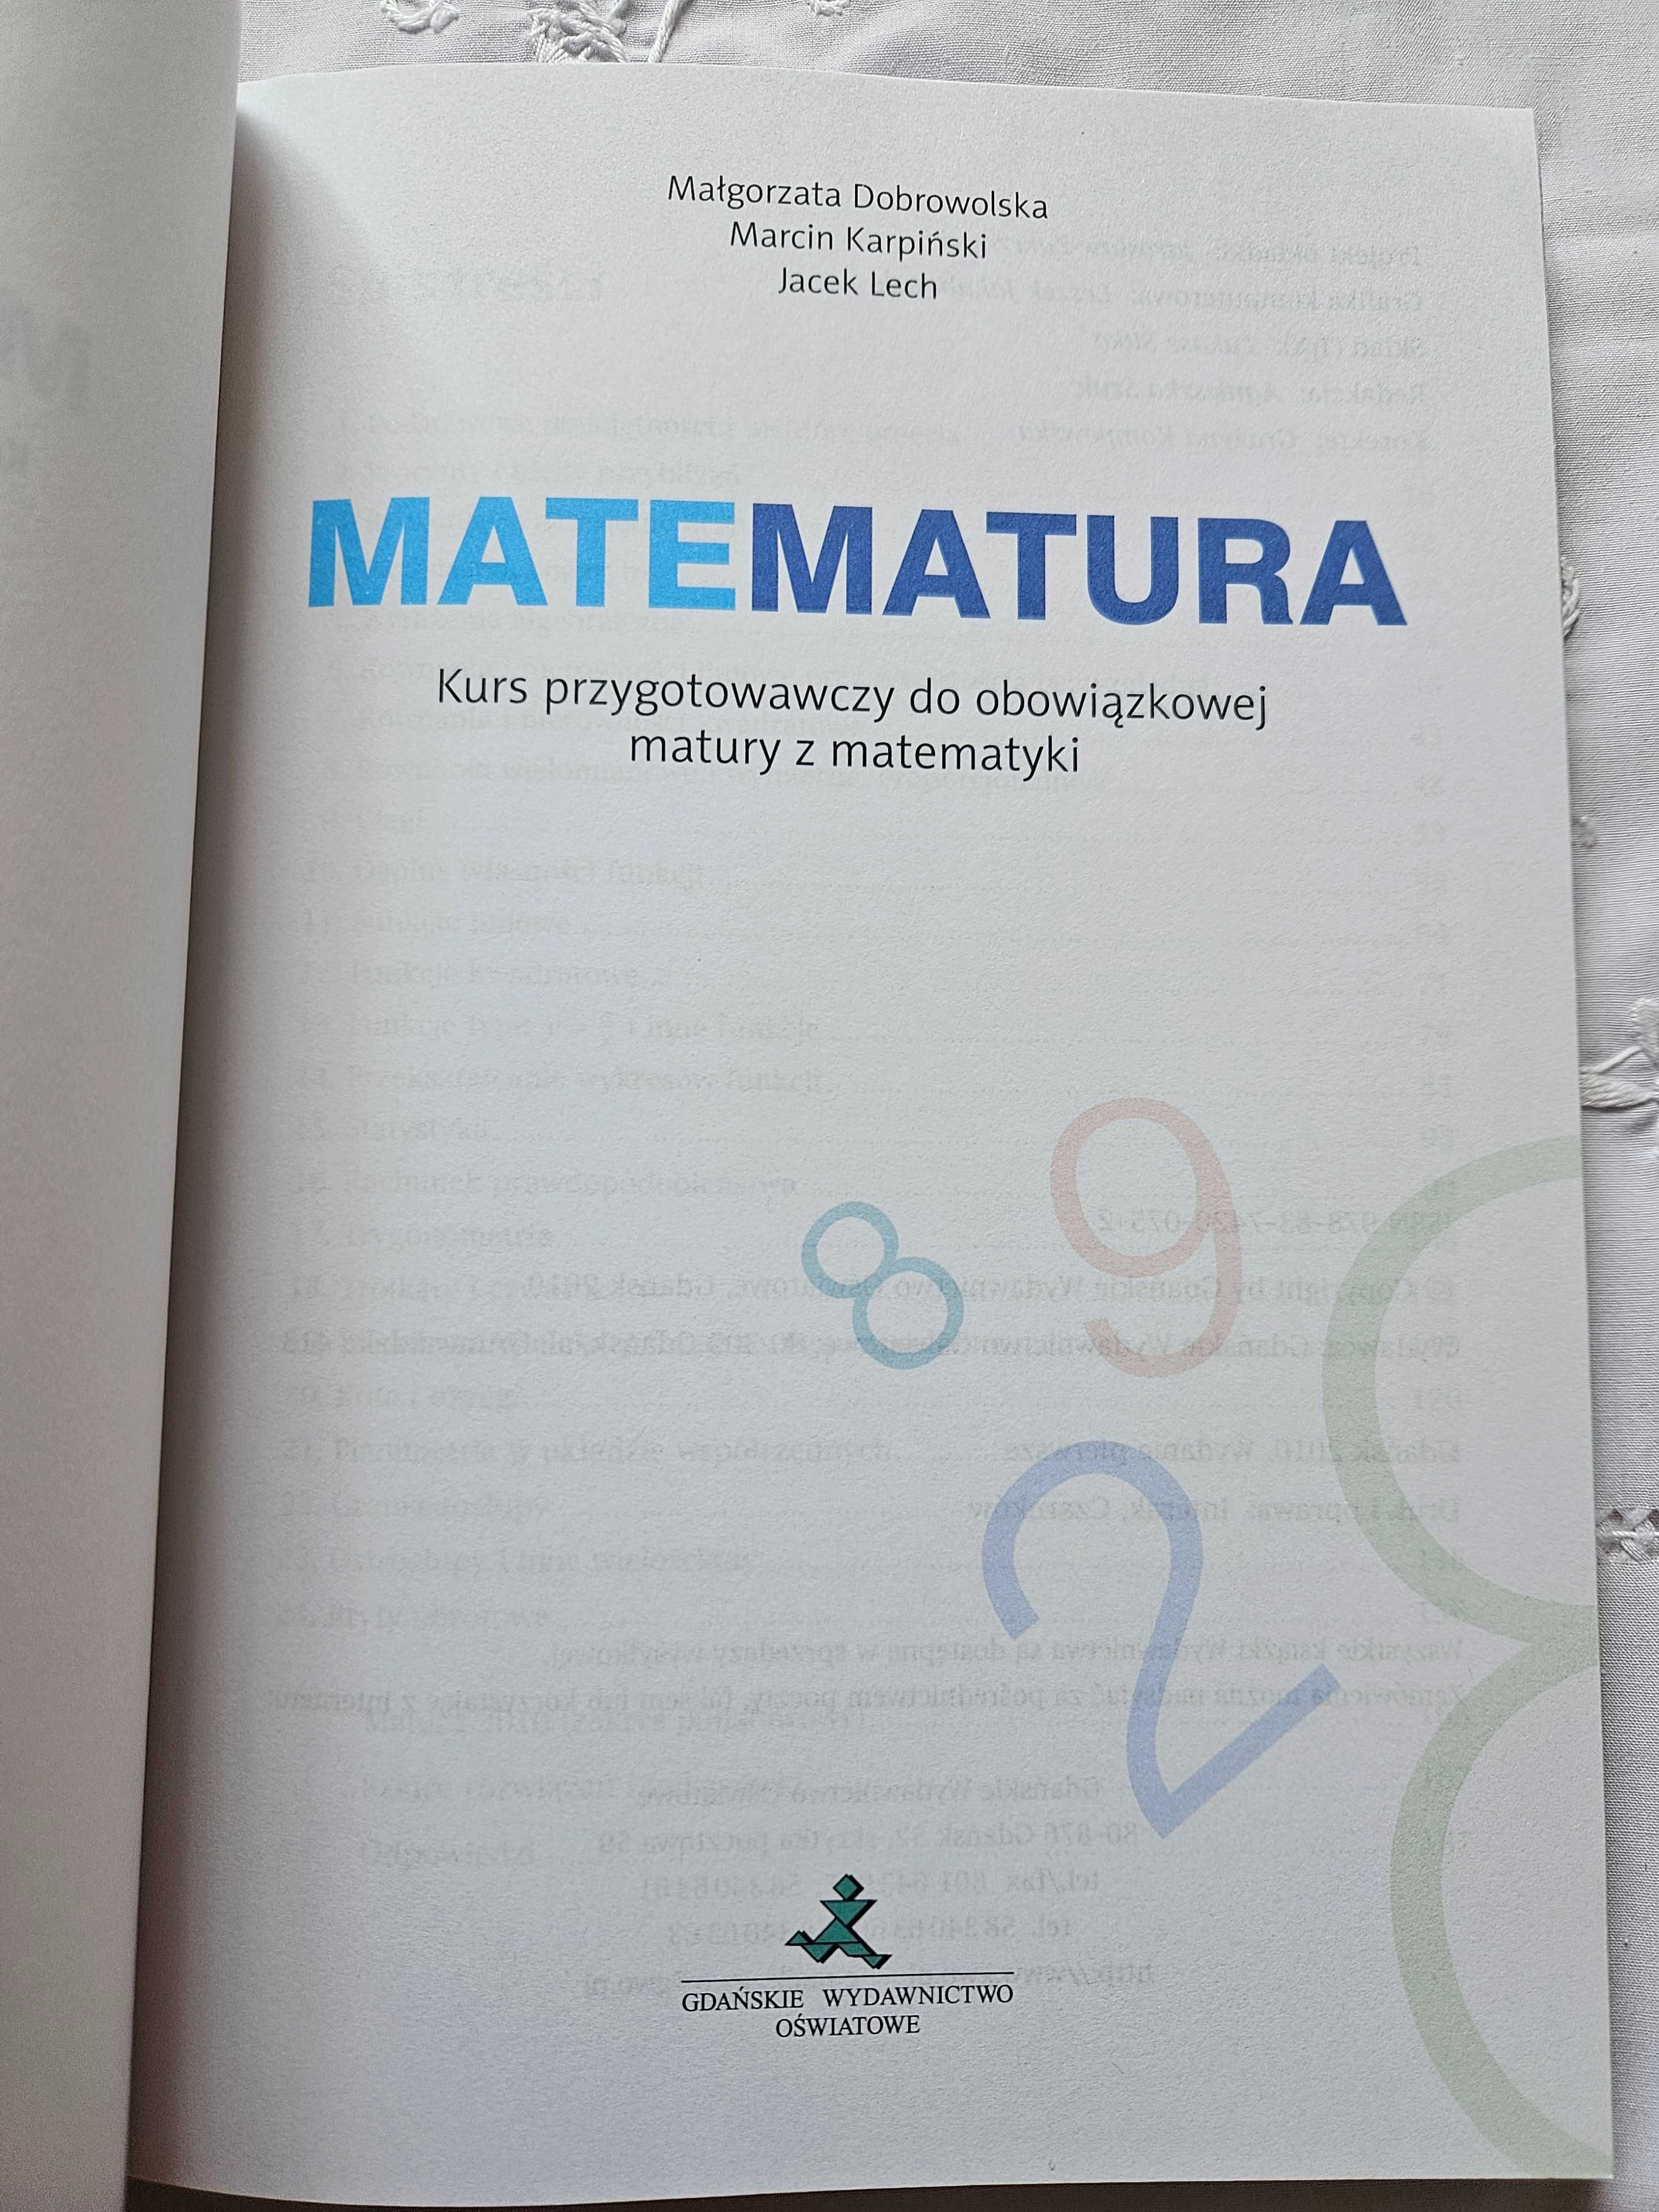 Matematura - kurs przygotowawczy do obowiązkowej matury z matem. + CD